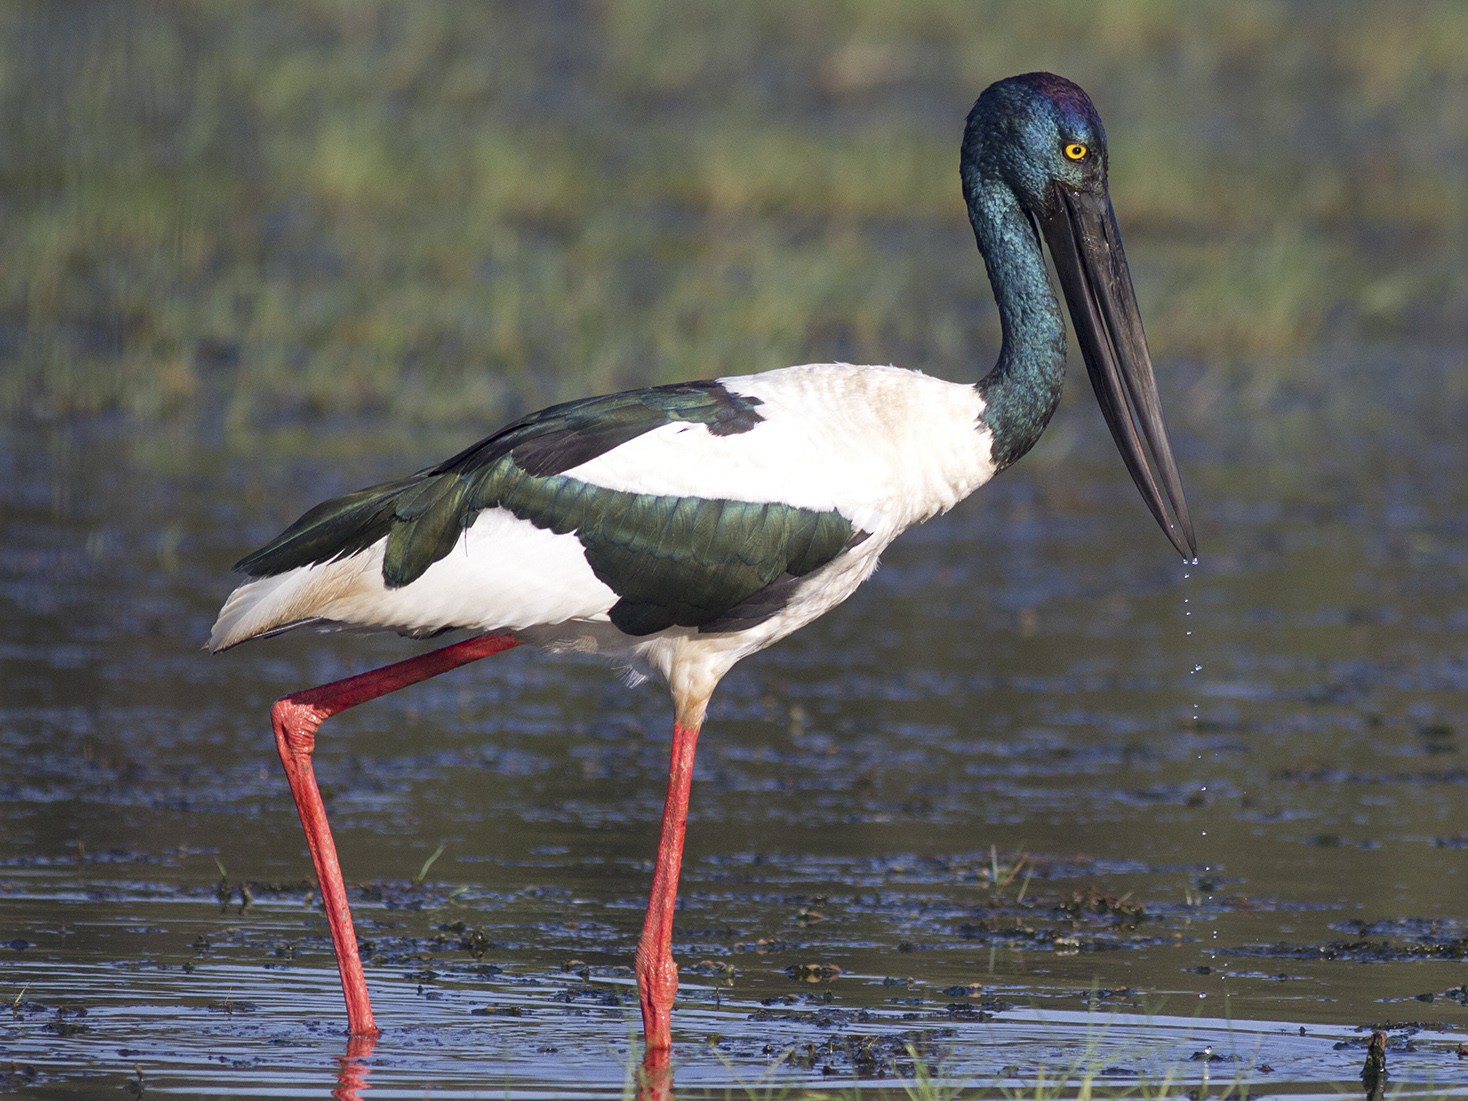 Black-necked Stork - Stephen Murray